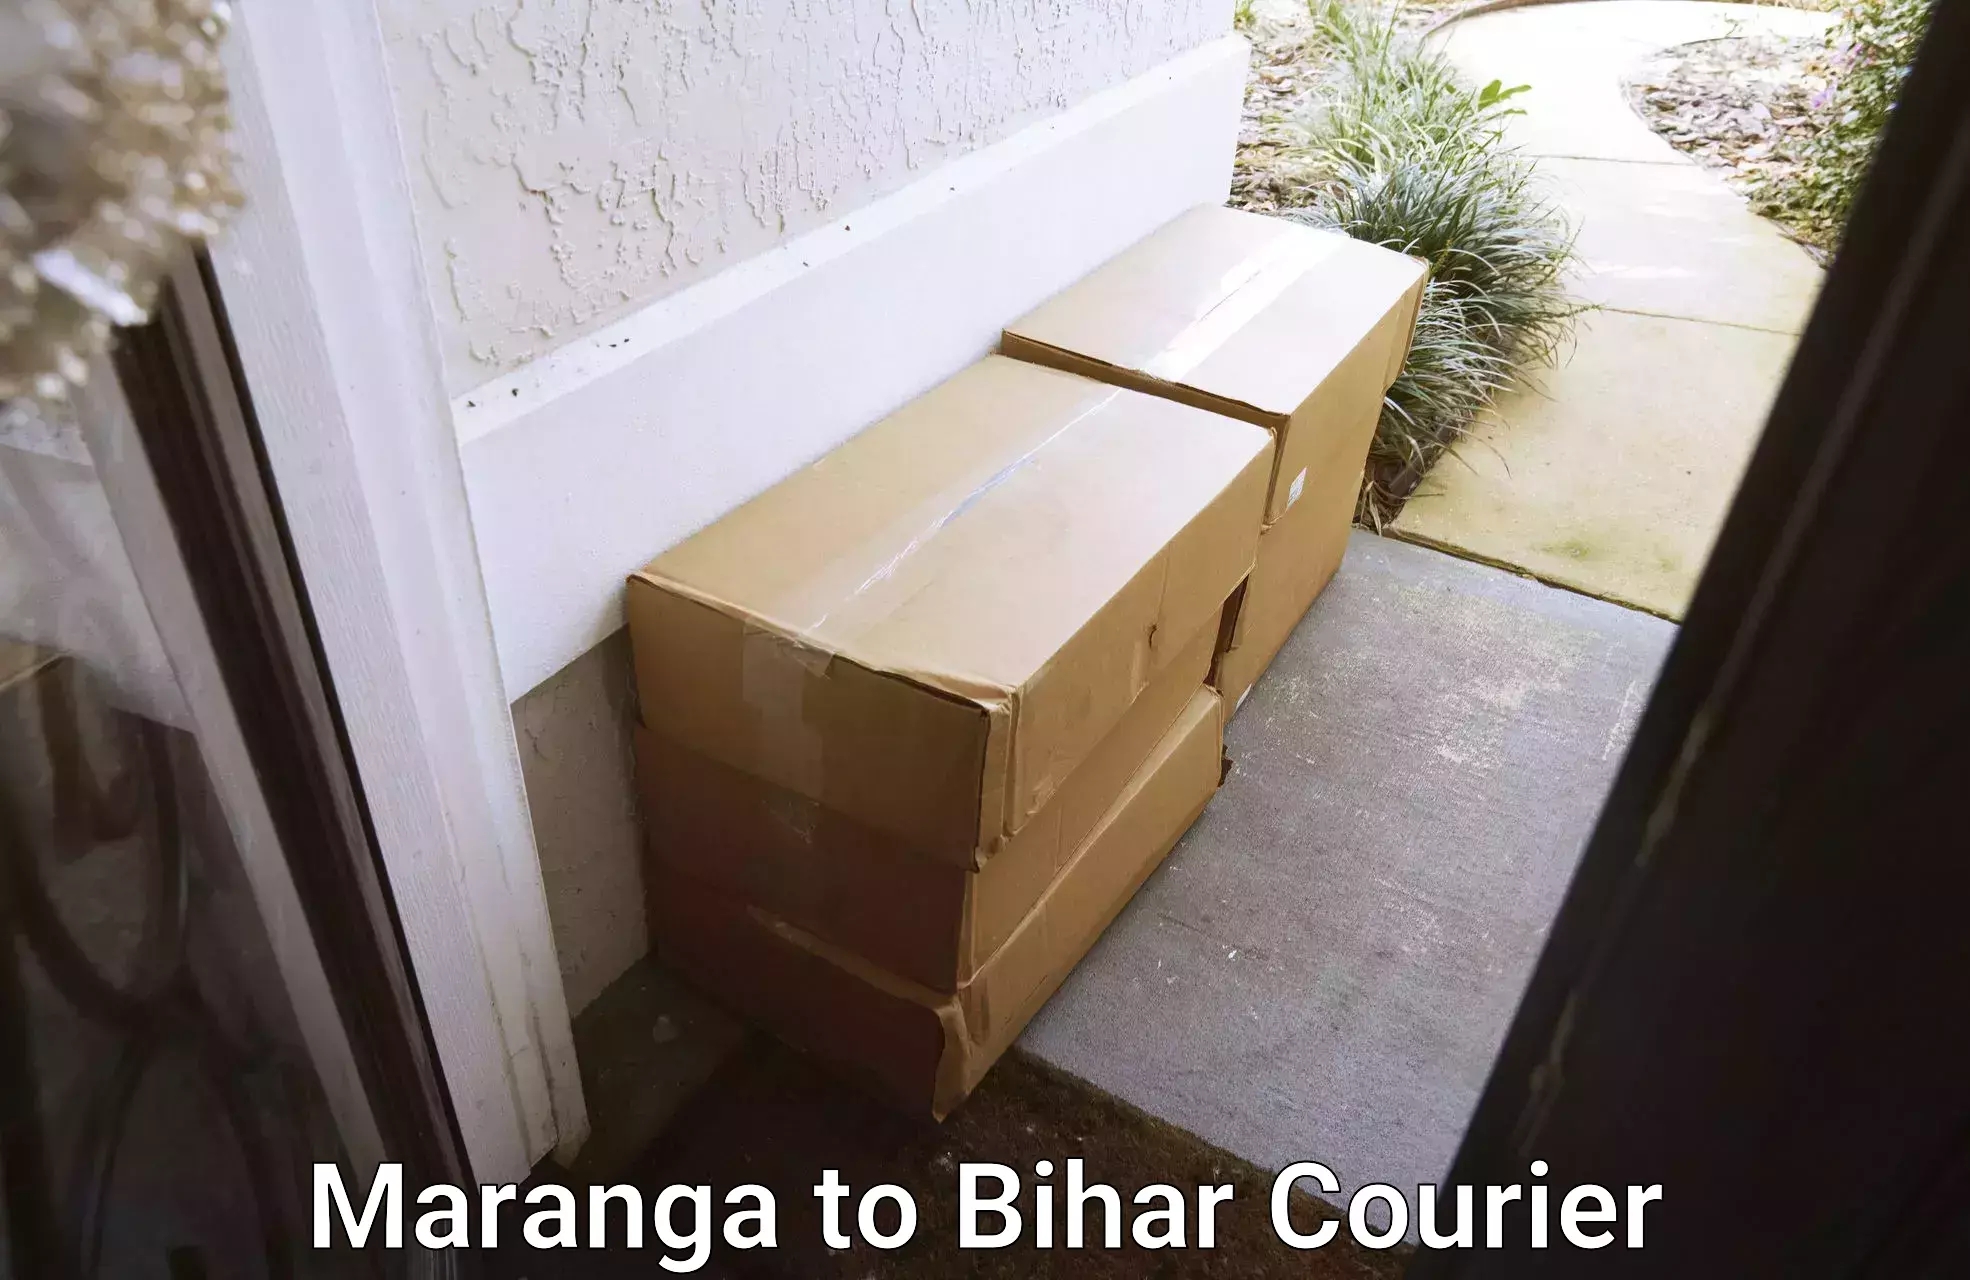 Professional furniture movers Maranga to Biraul